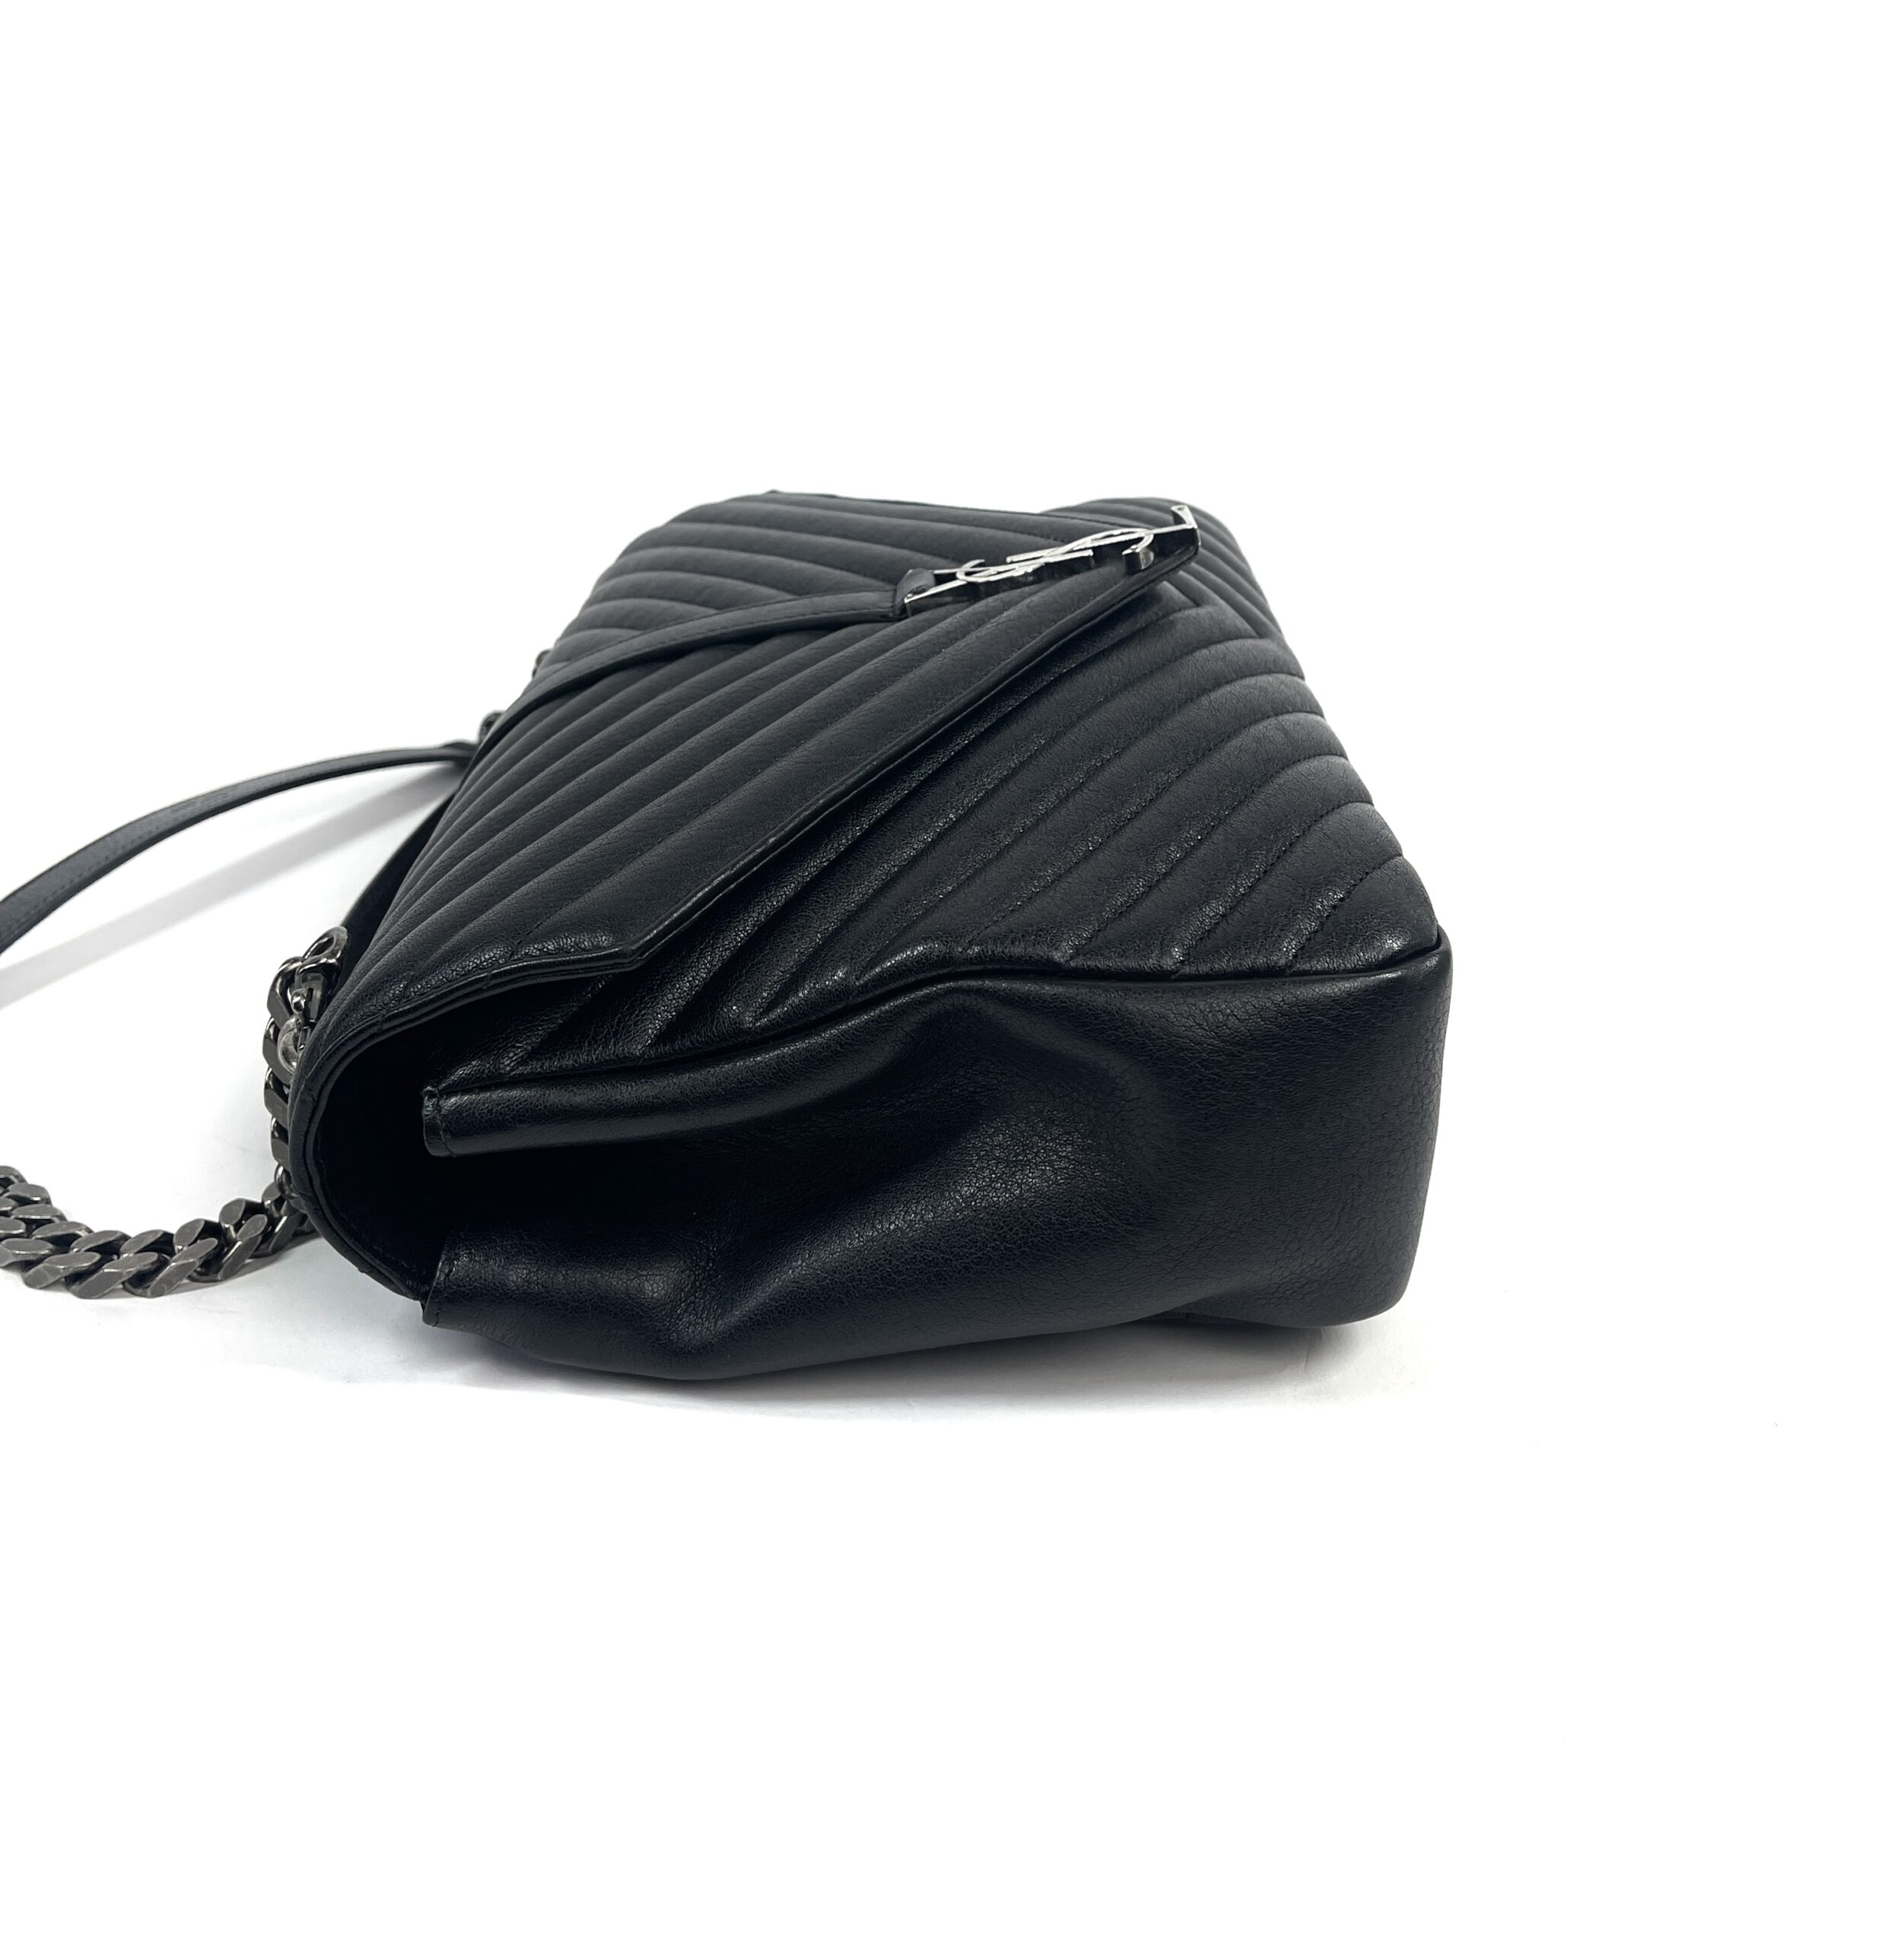 Saint Laurent Large Loulou Shoulder Bag - Black